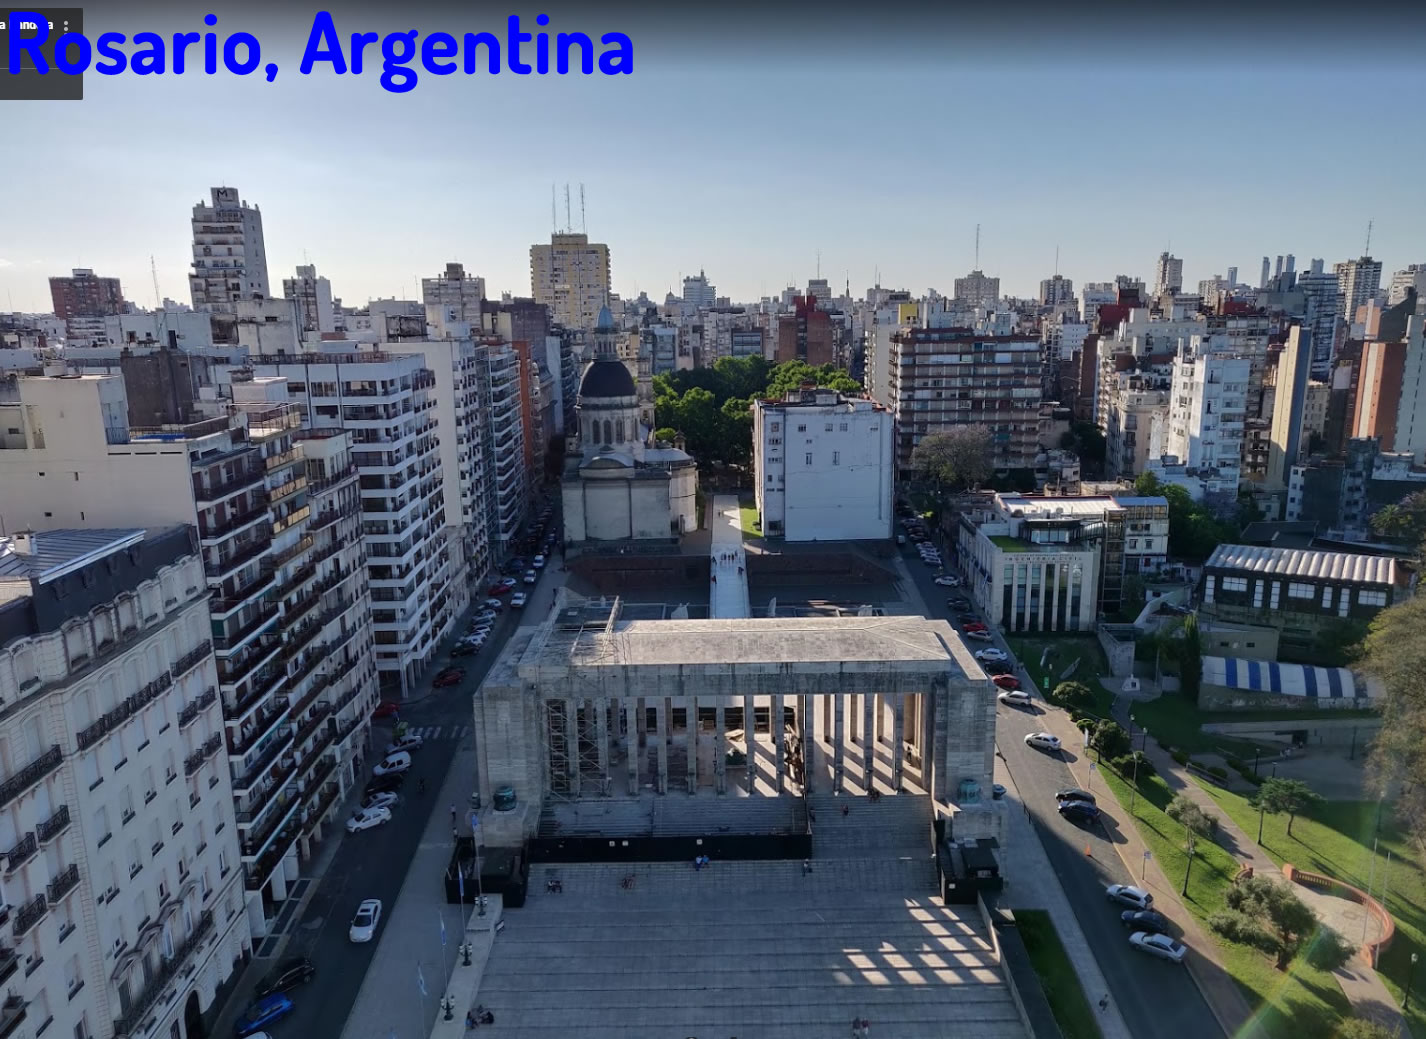 Rosario argentina